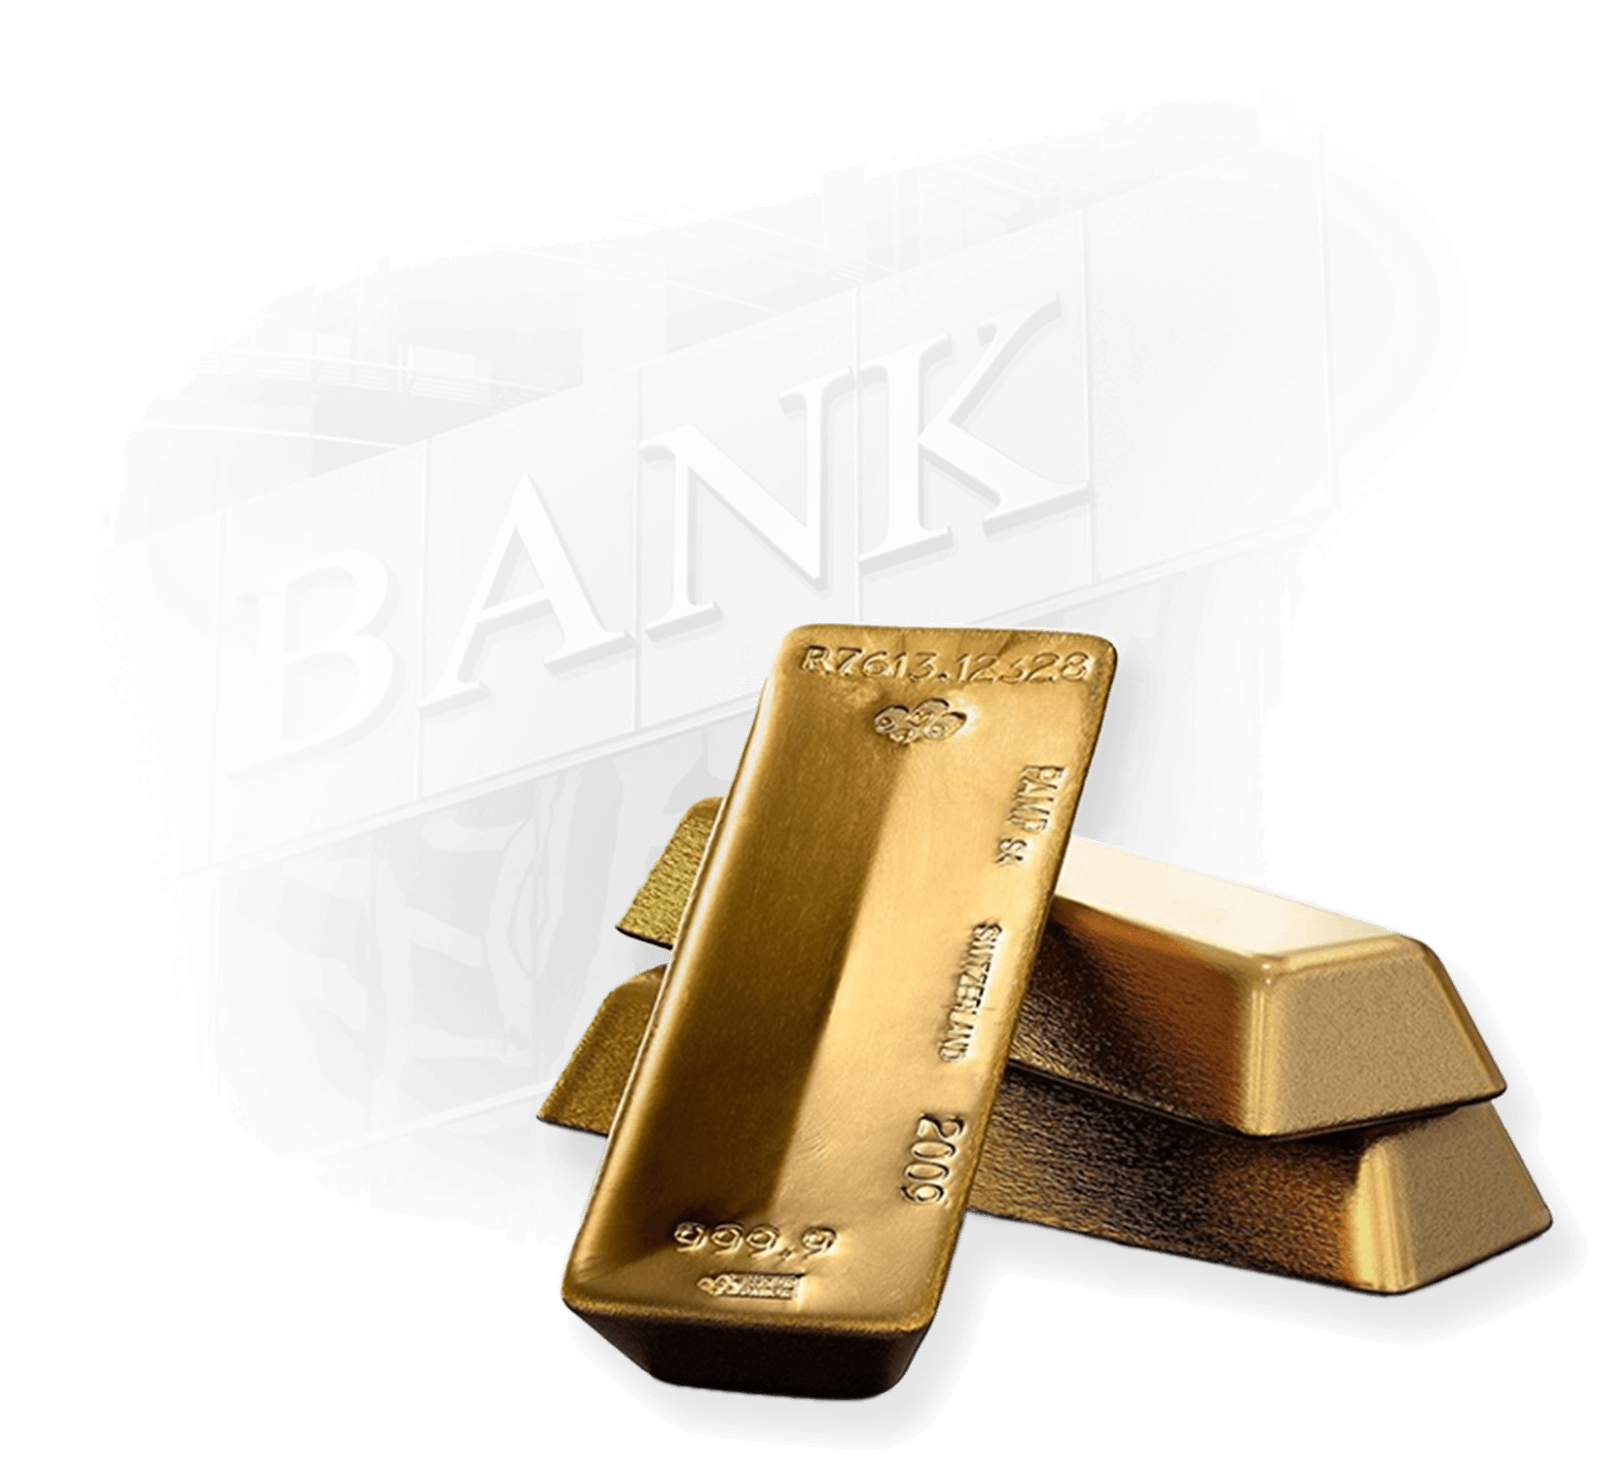 Centrale banken en goud